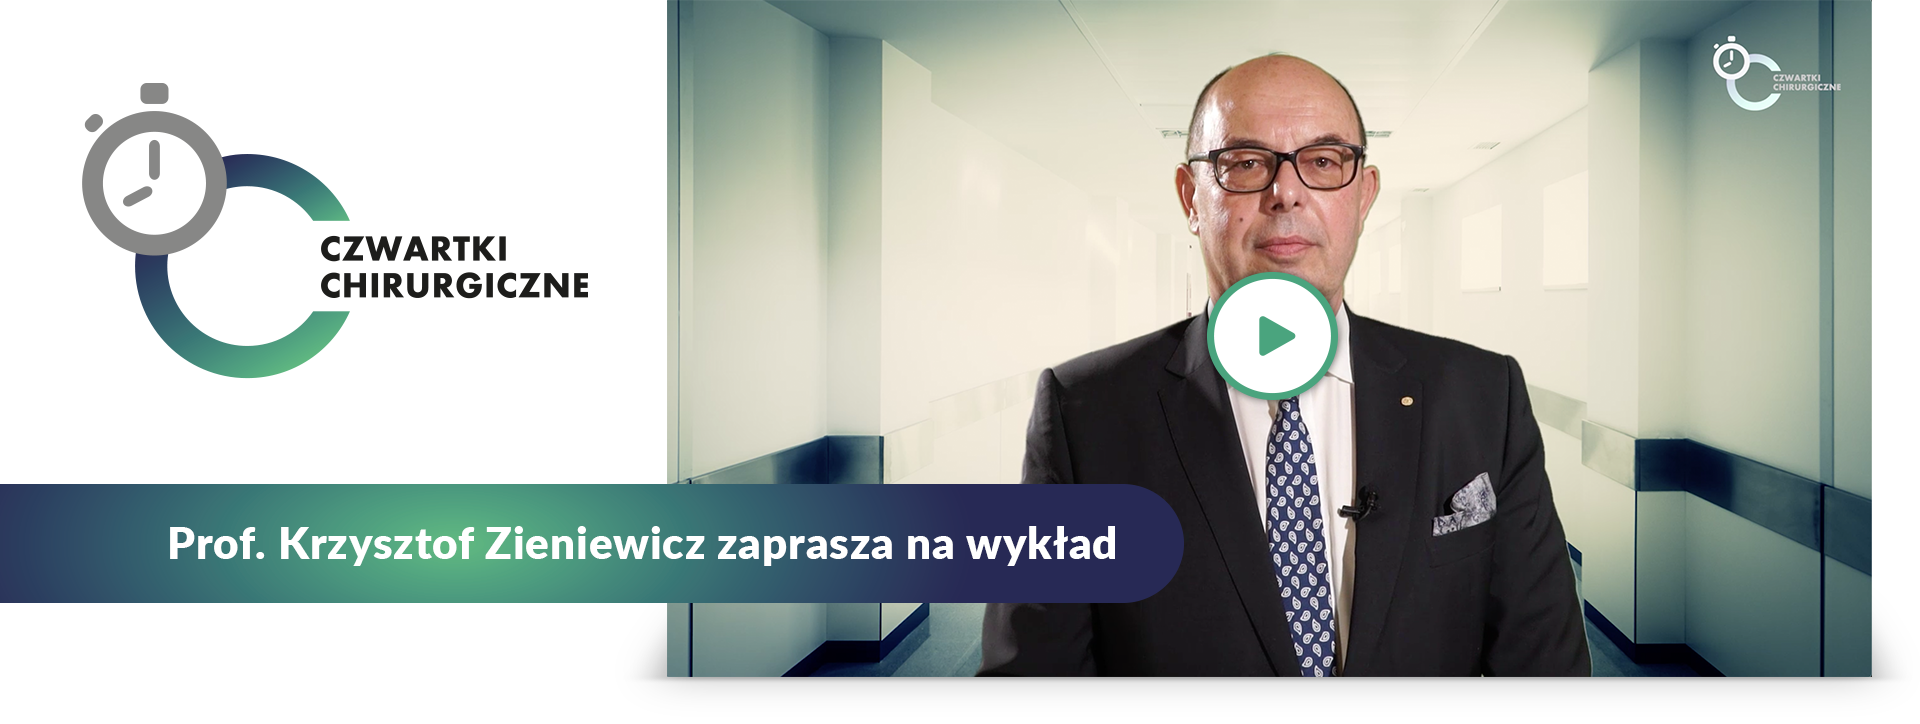 banner prof krzysztof zieniewicz 2020 11 19